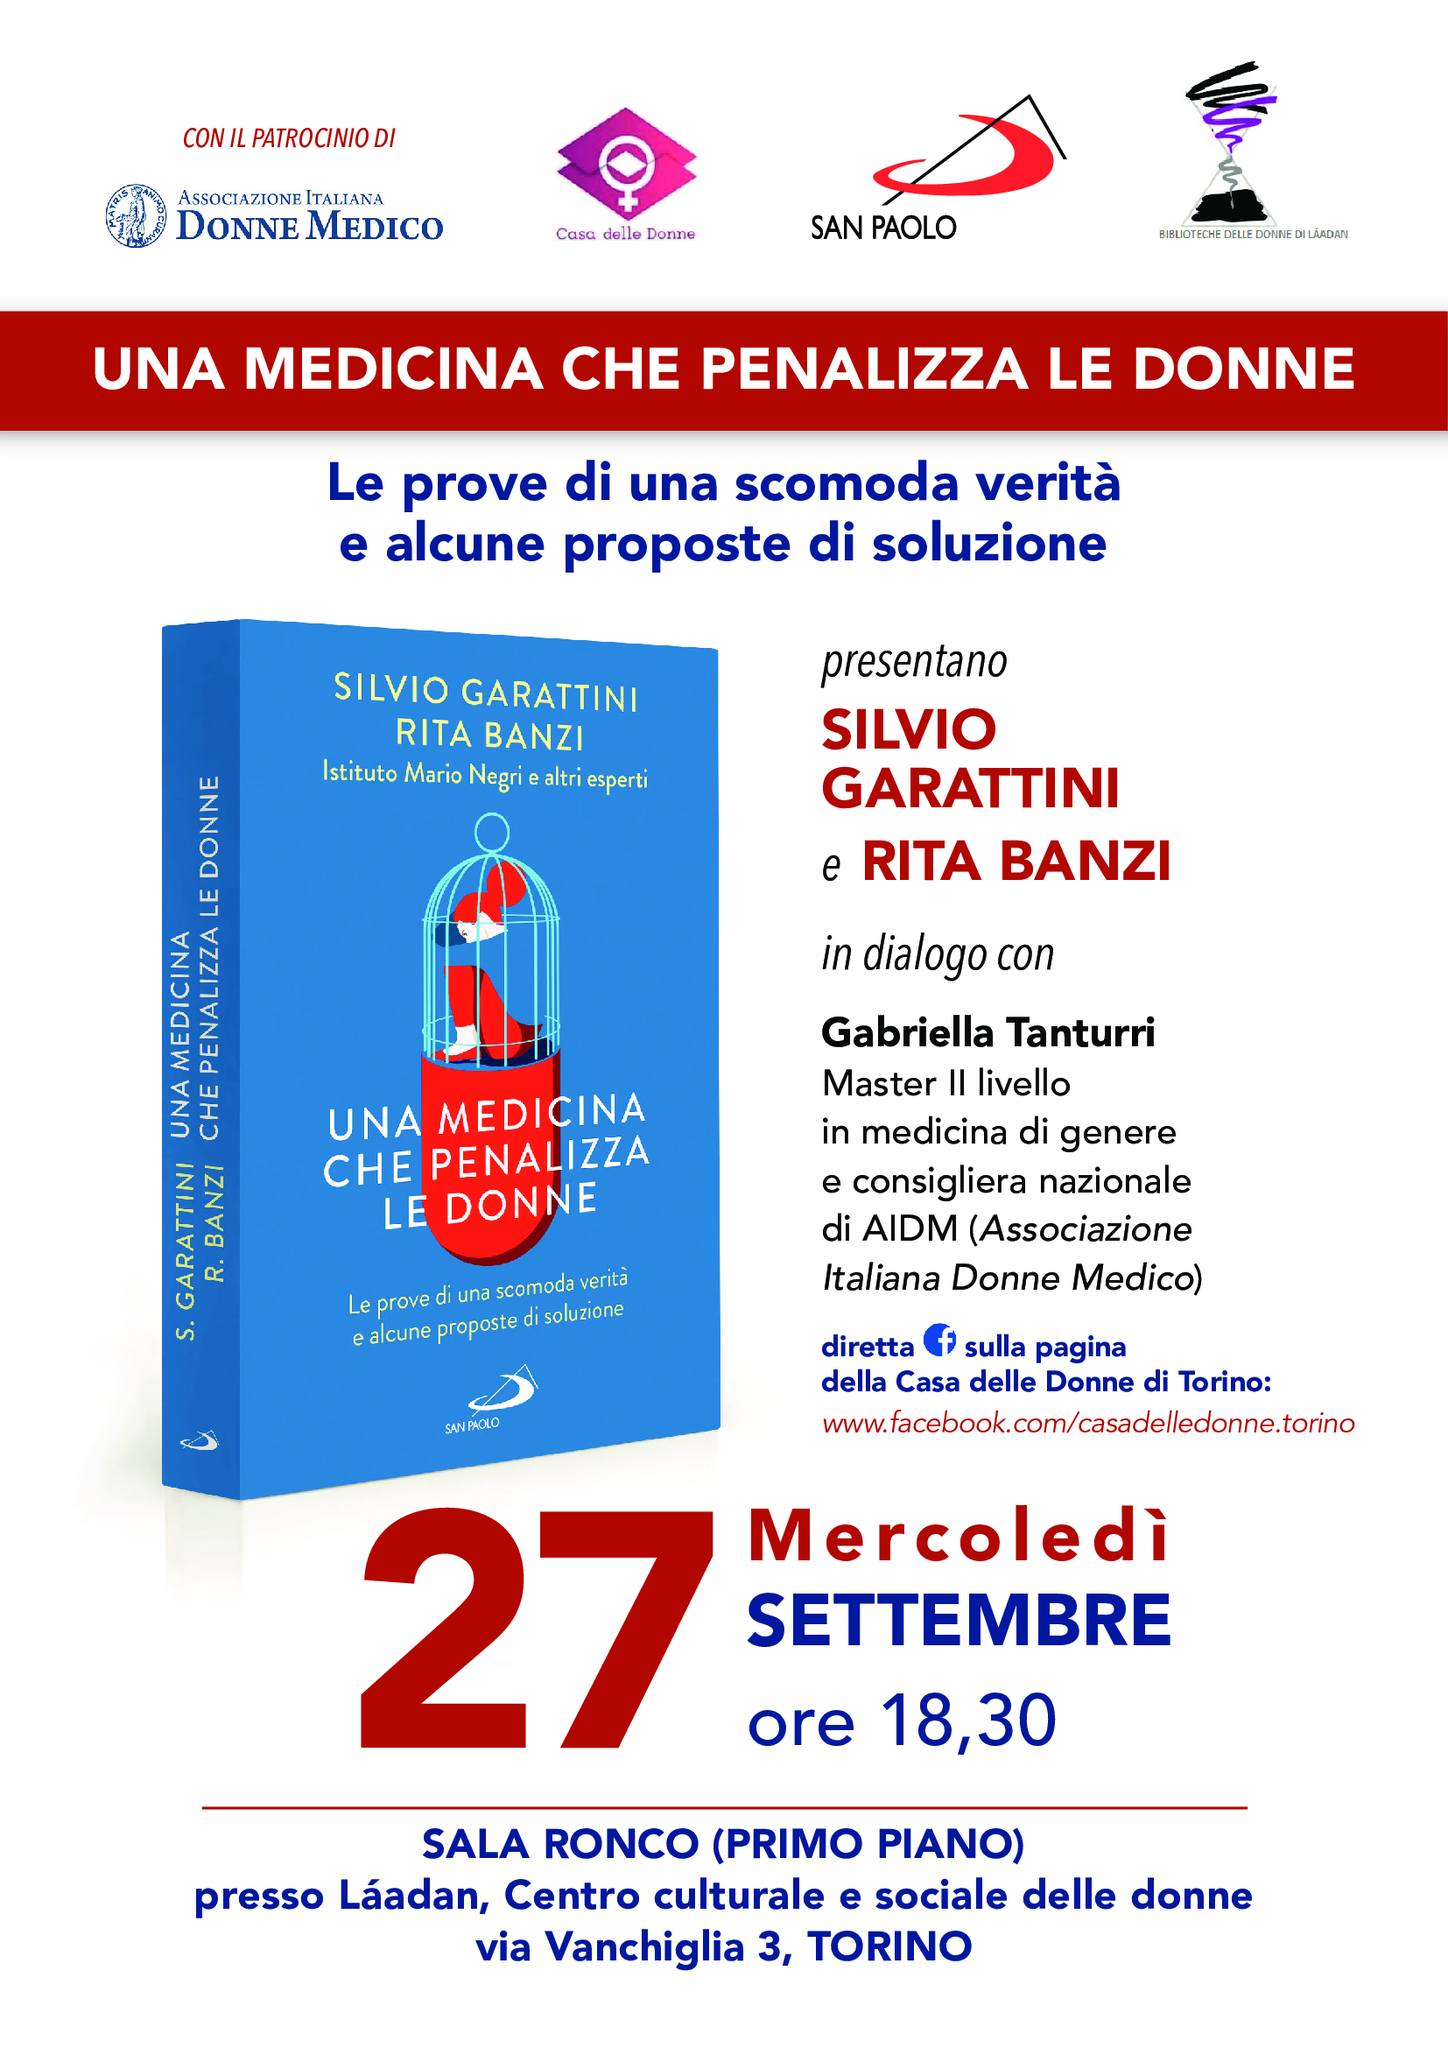 medicina_che_penalizza_donne.jpg - 247.48 Kb